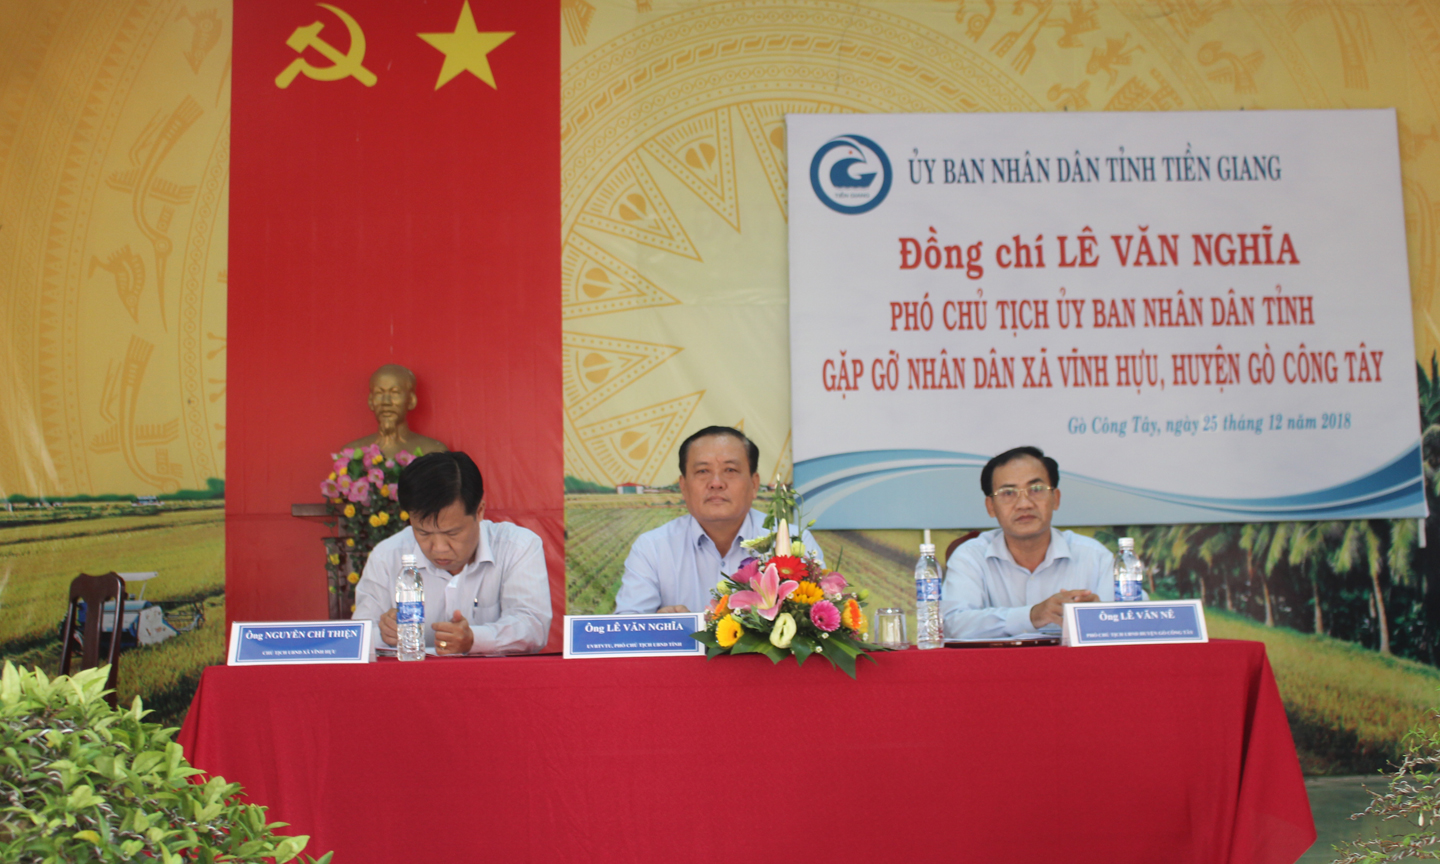 Đồng chí Lê Văn Nghĩa phát biểu ý kiến tại buổi gặp gỡ.